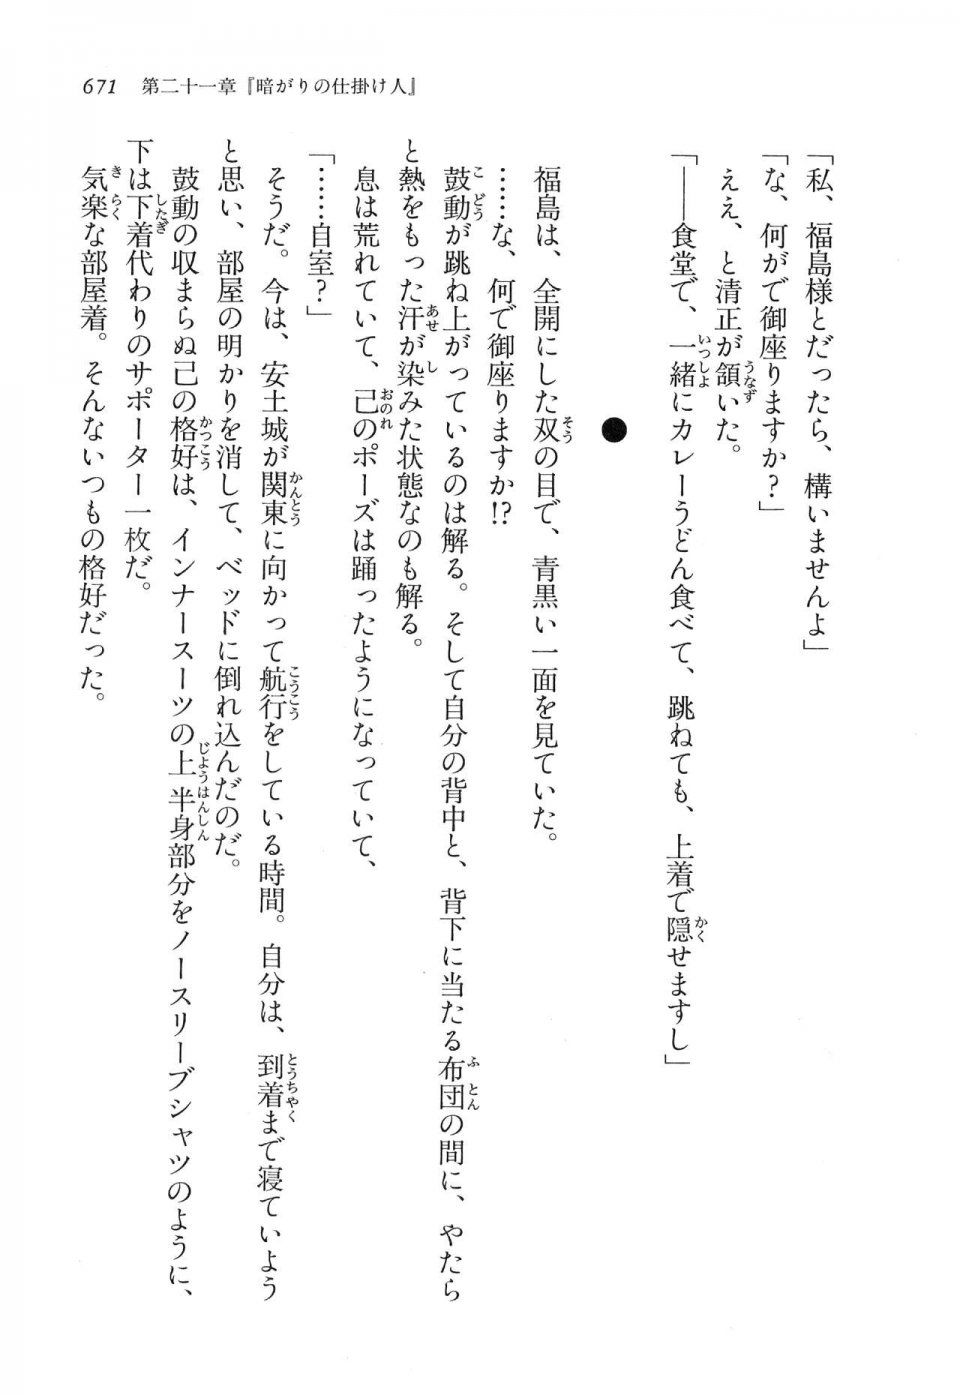 Kyoukai Senjou no Horizon LN Vol 16(7A) - Photo #671